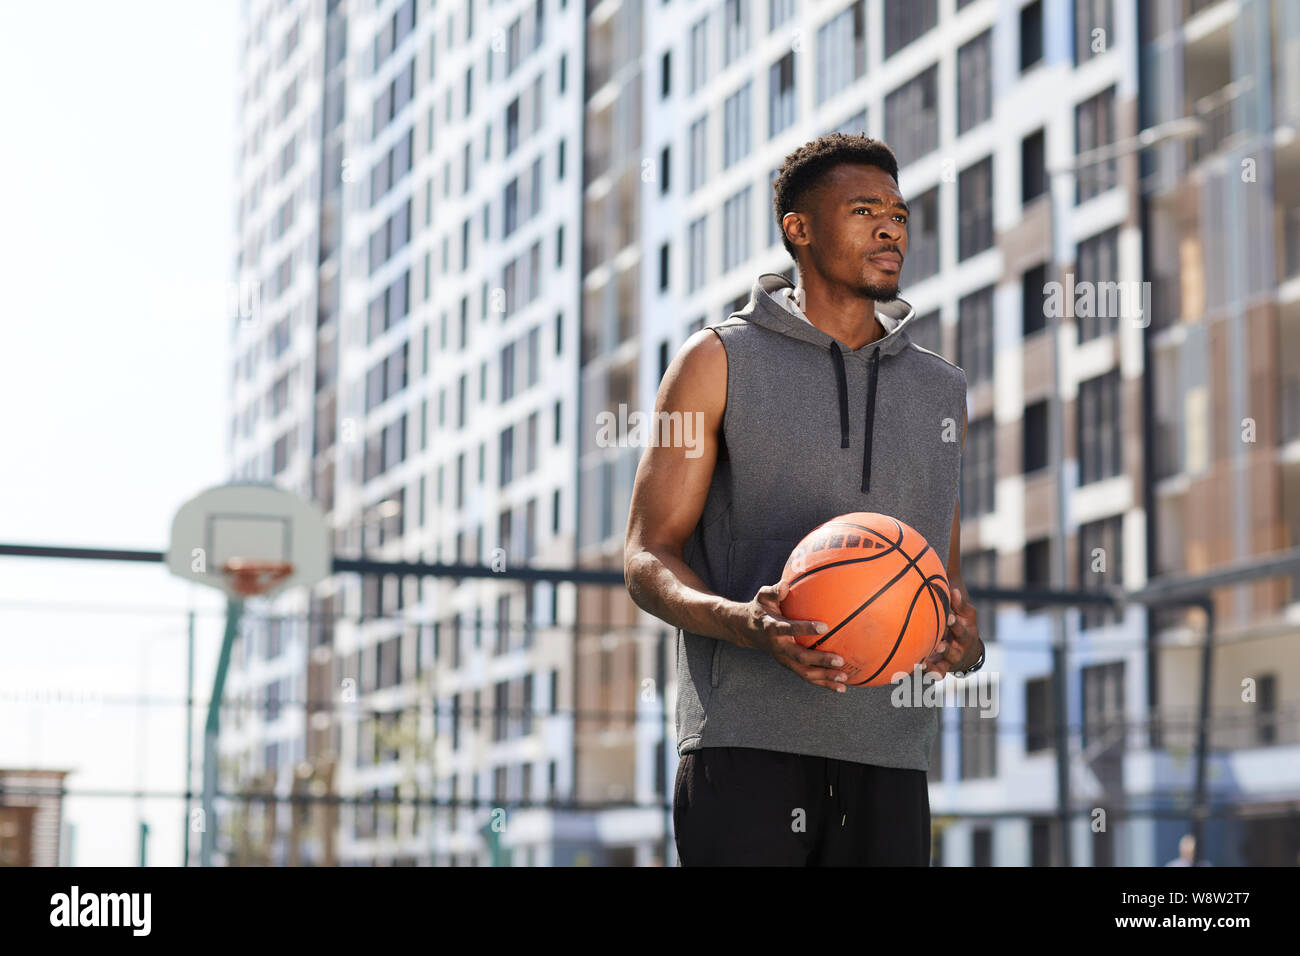 Vita ritratto di maschile uomo africano holding basket ball in corte all'aperto, spazio di copia Foto Stock